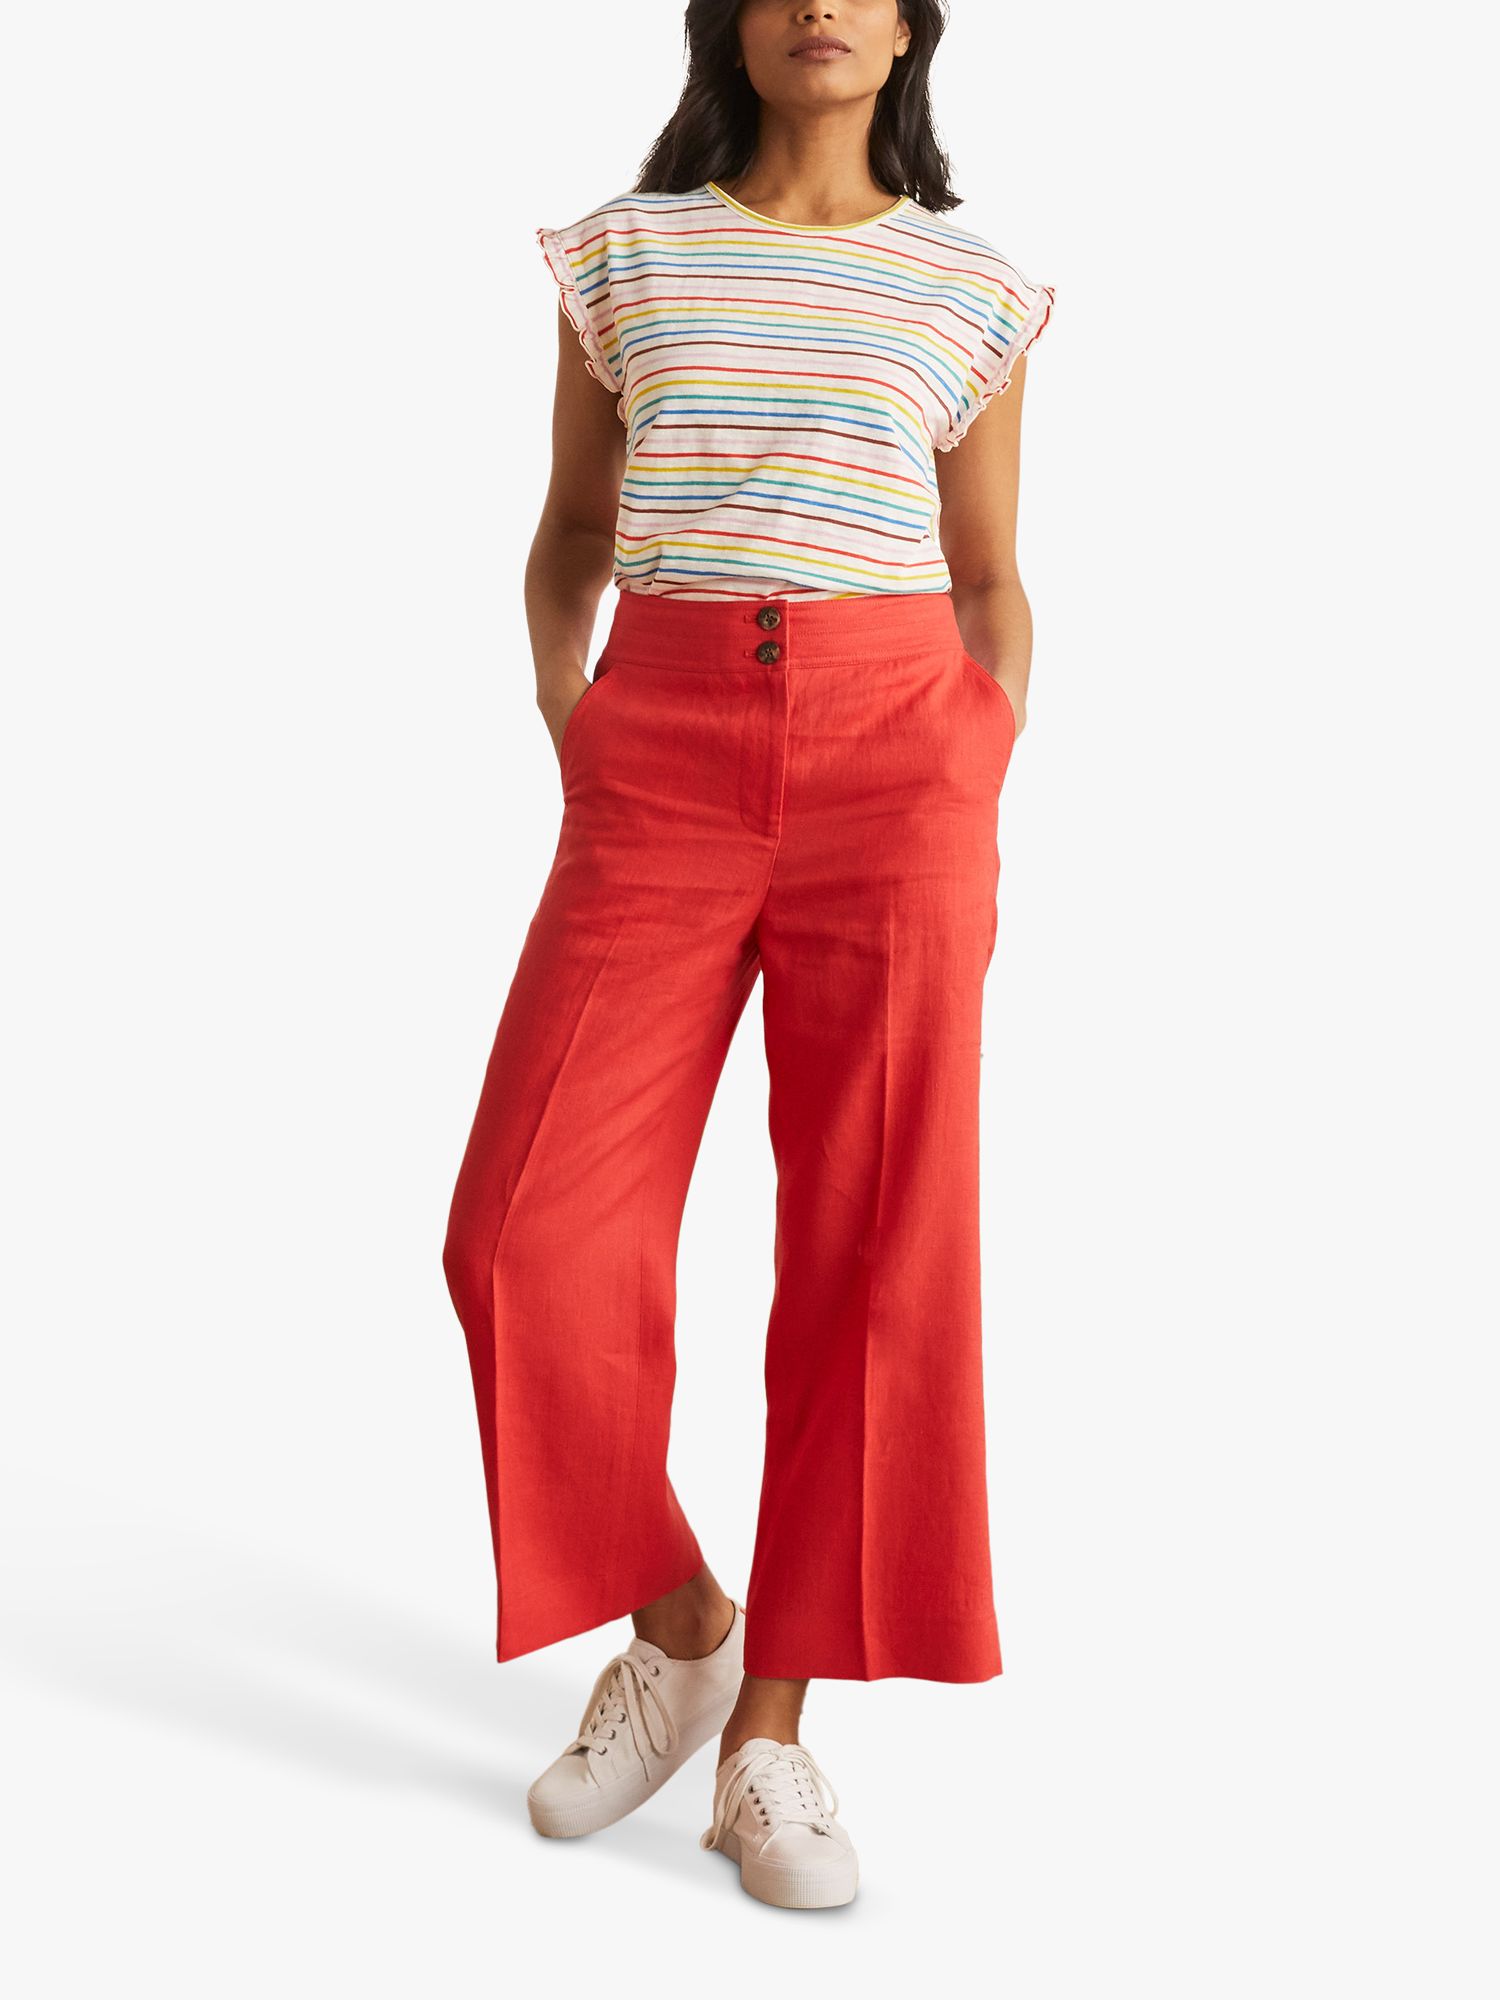 Boden Faye Breton Stripe Cotton T-Shirt, Rainbow